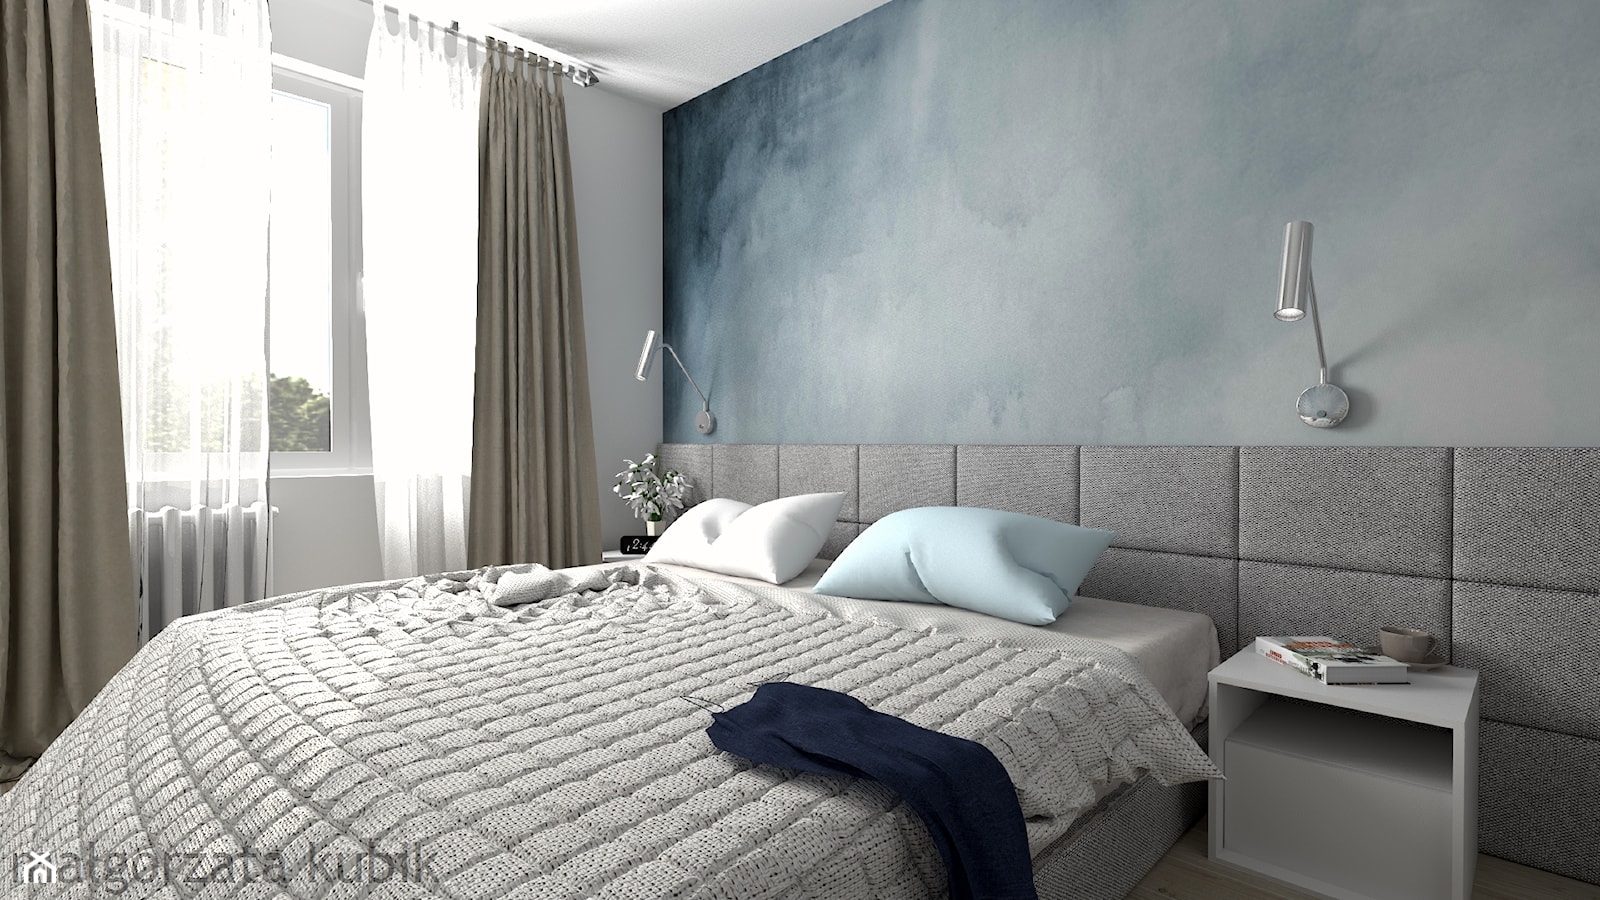 Mieszkanie w Zamościu - Mała czarna szara sypialnia, styl nowoczesny - zdjęcie od Malgorzata Kubik - Homebook